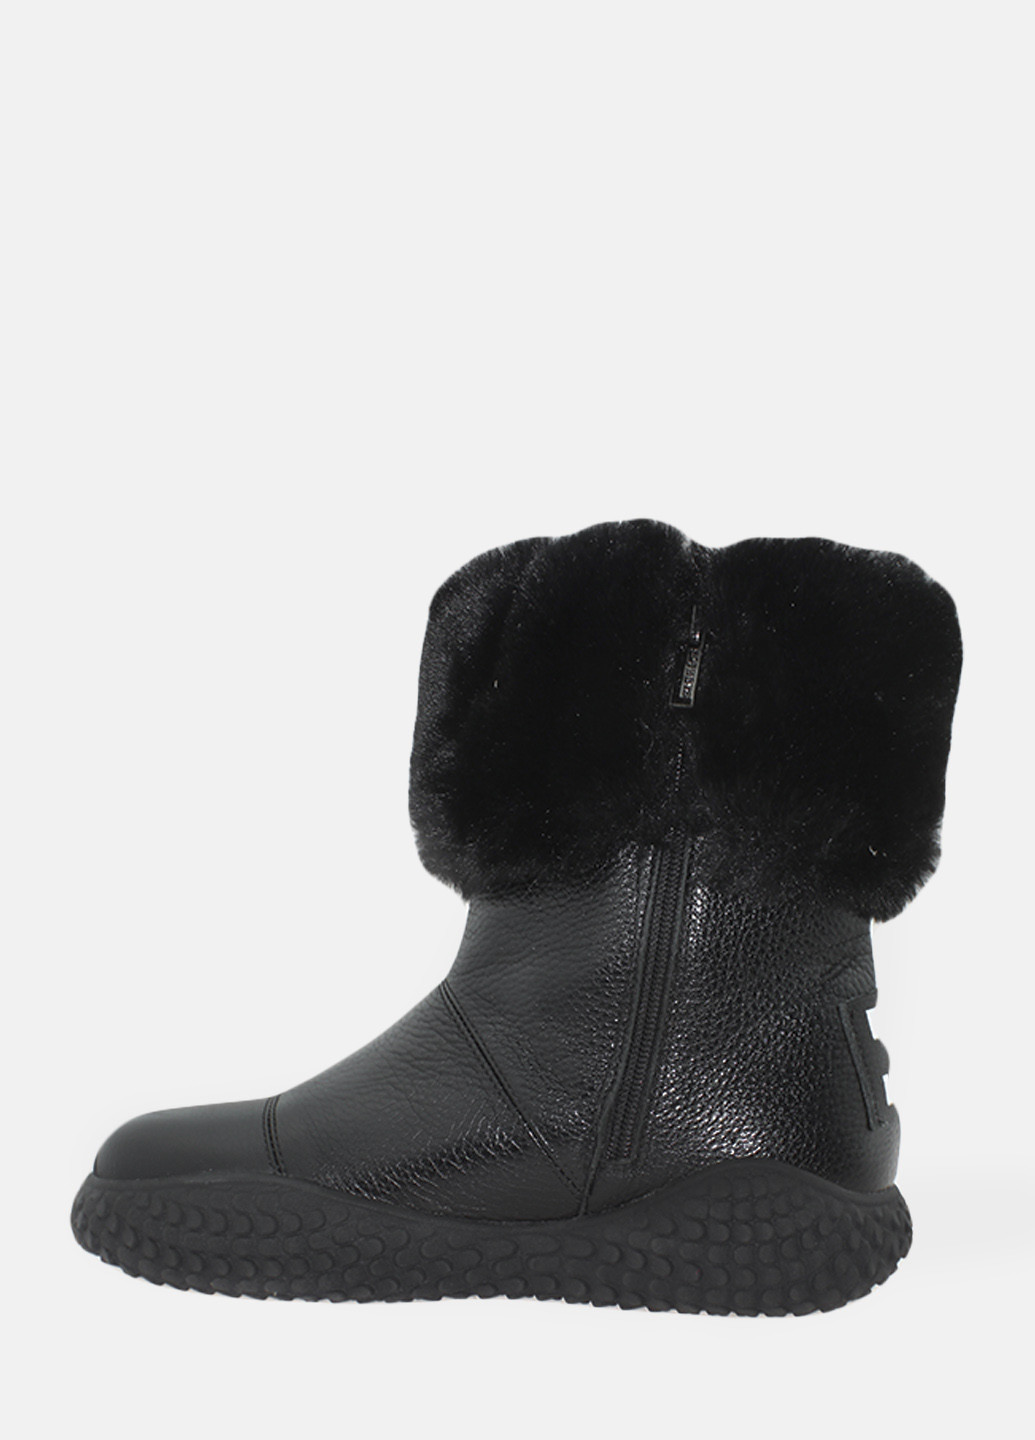 Зимние ботинки rsm175-22 черный Sothby's